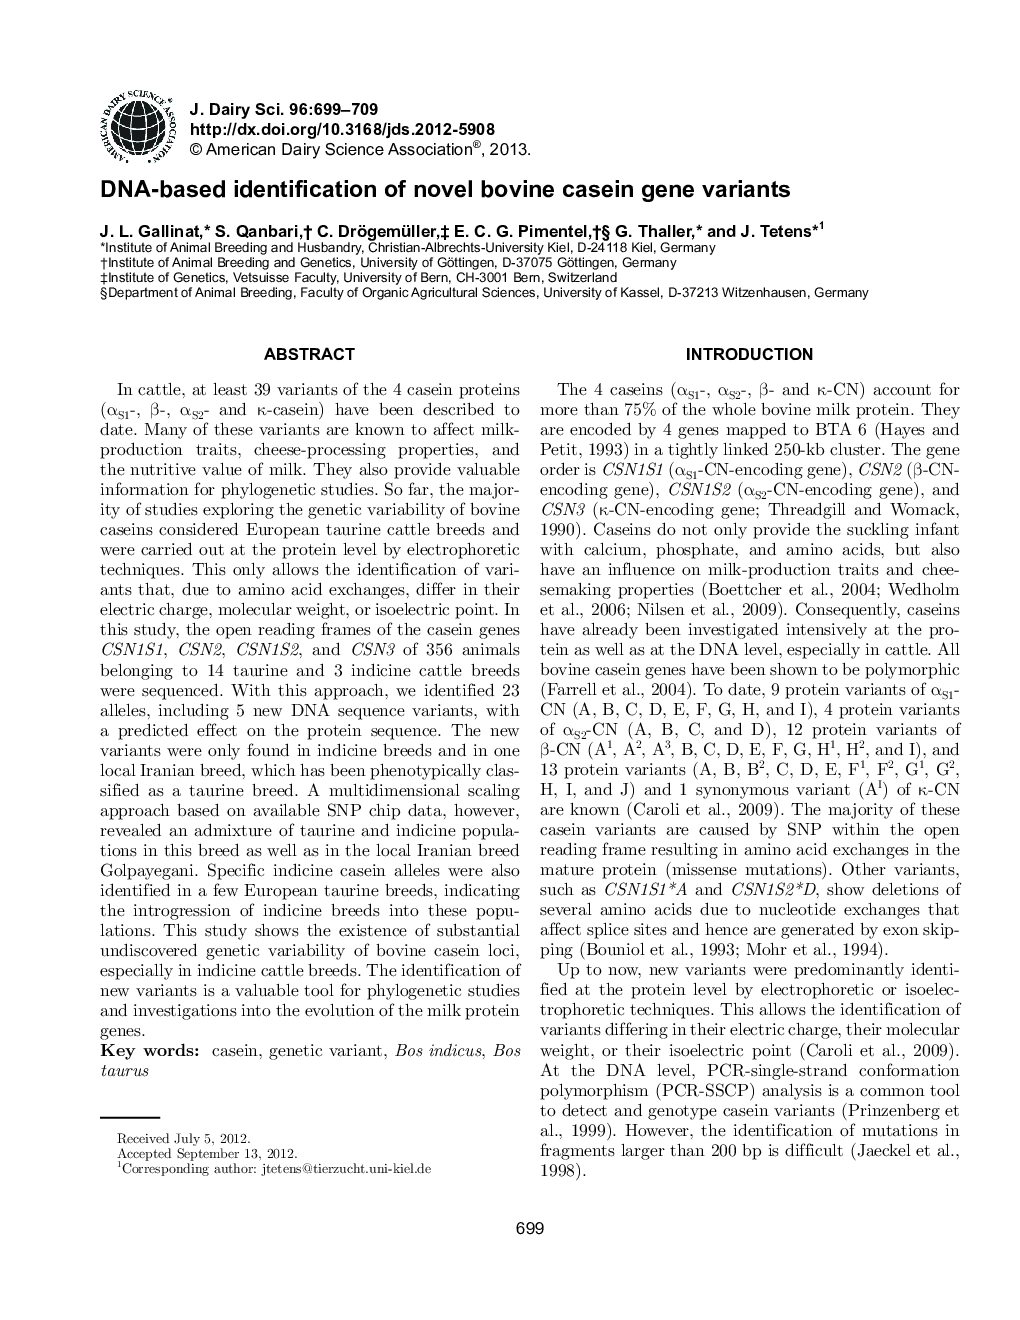 DNA-based identification of novel bovine casein gene variants